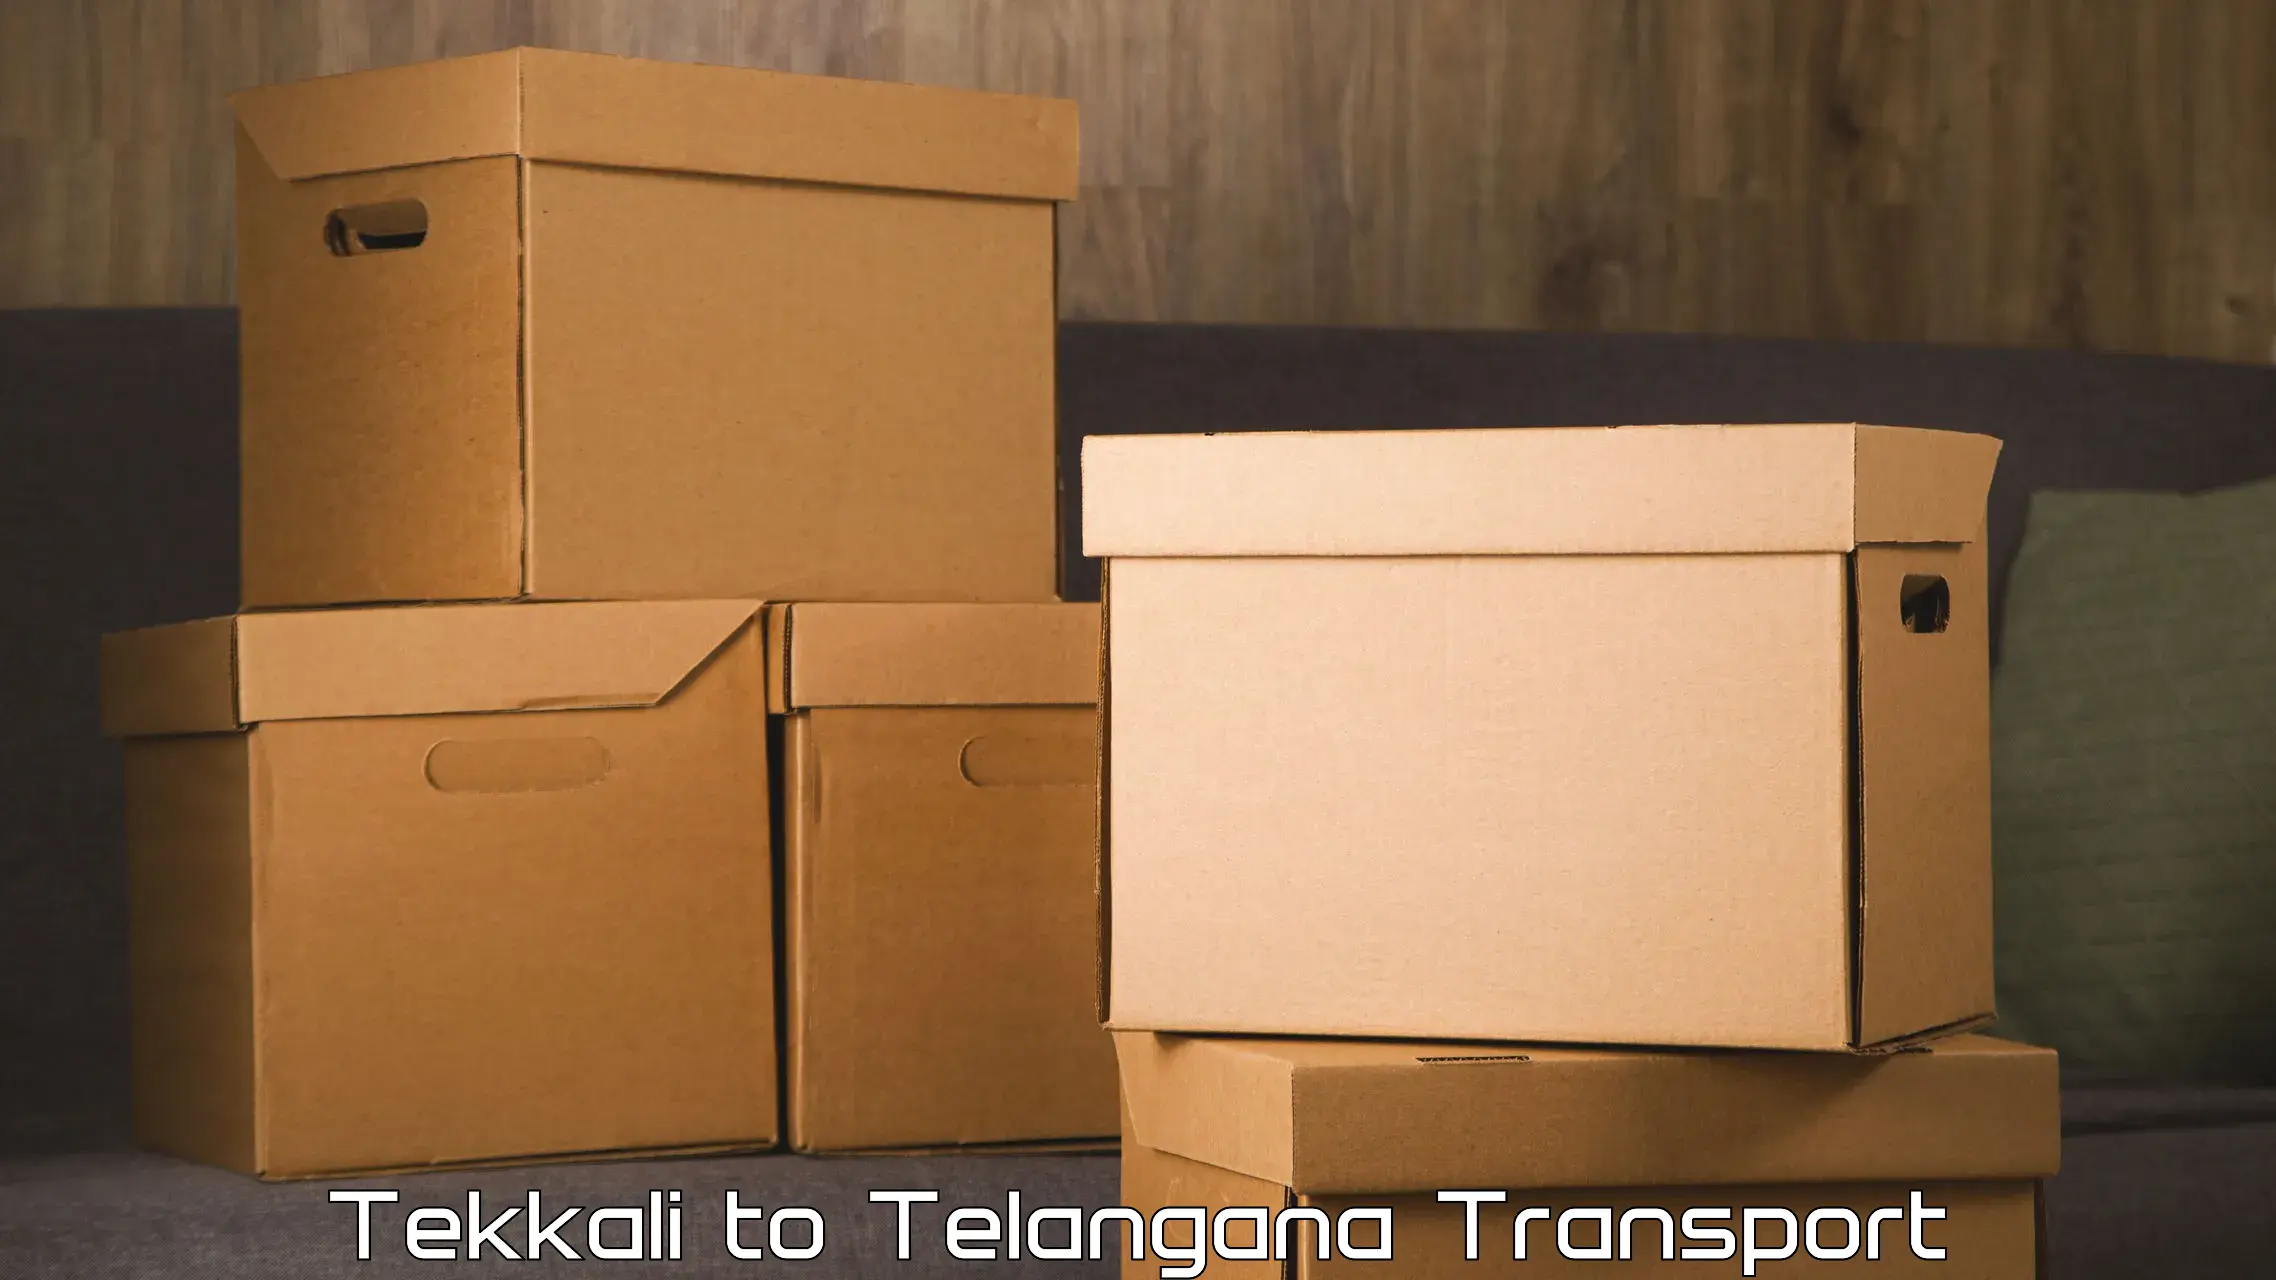 Parcel transport services Tekkali to Warangal